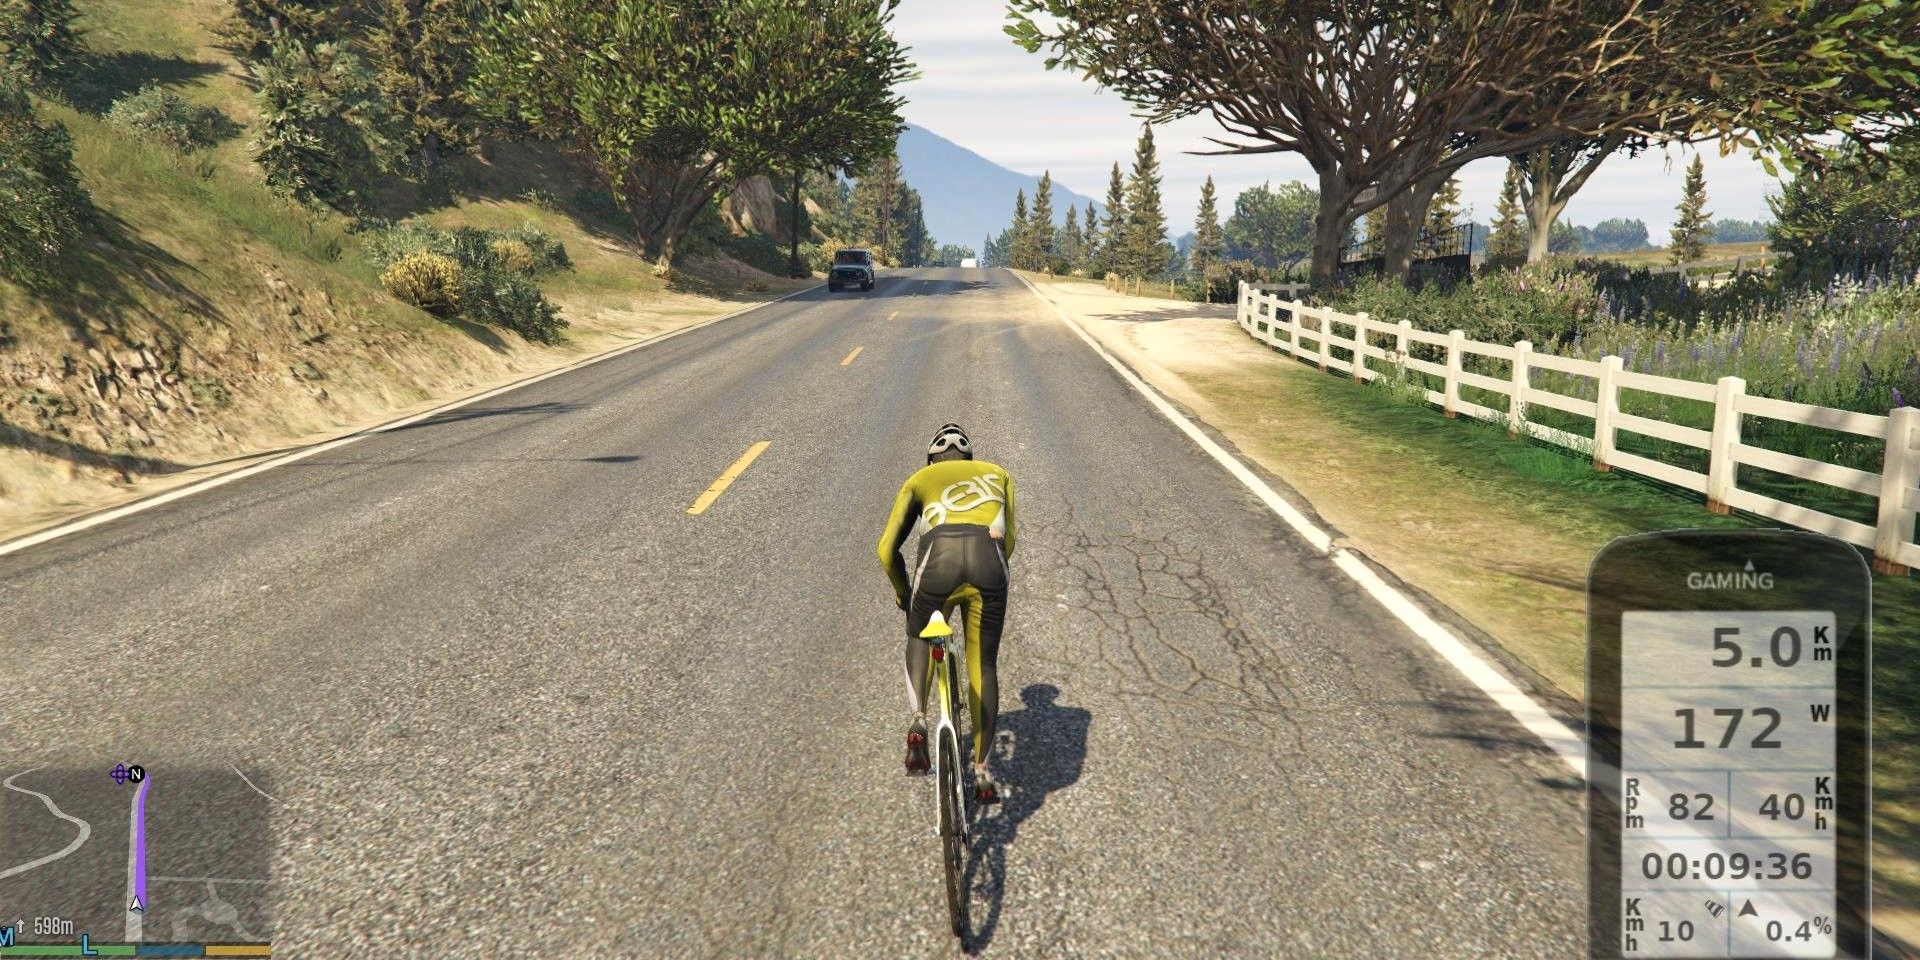 Bicicleta real utilizada para pedalear bicicletas GTA 5, multijugador ahora disponible